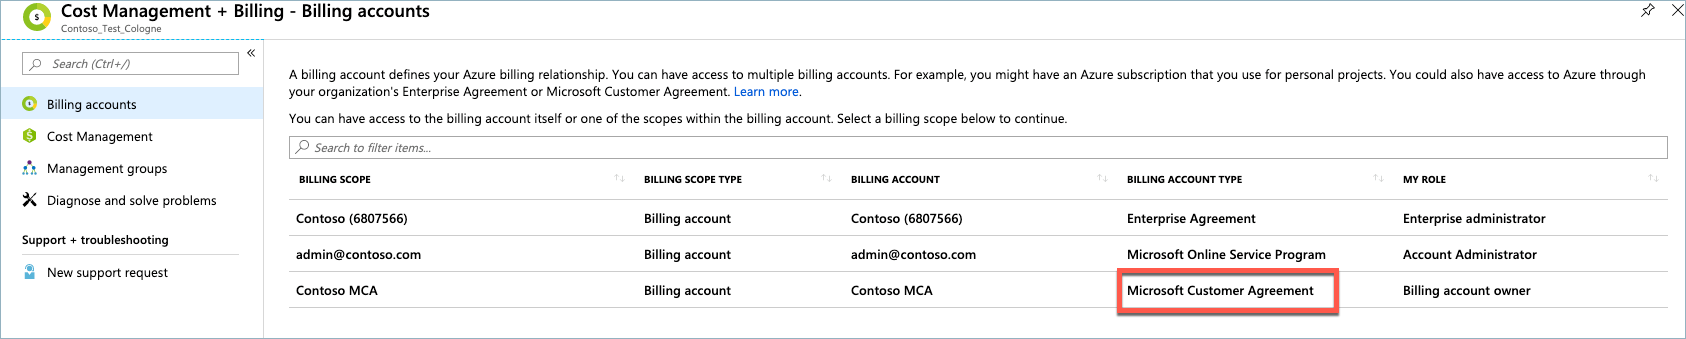 Contrat client Microsoft, Type de compte de facturation, liste de comptes de facturation, portail Microsoft Azure